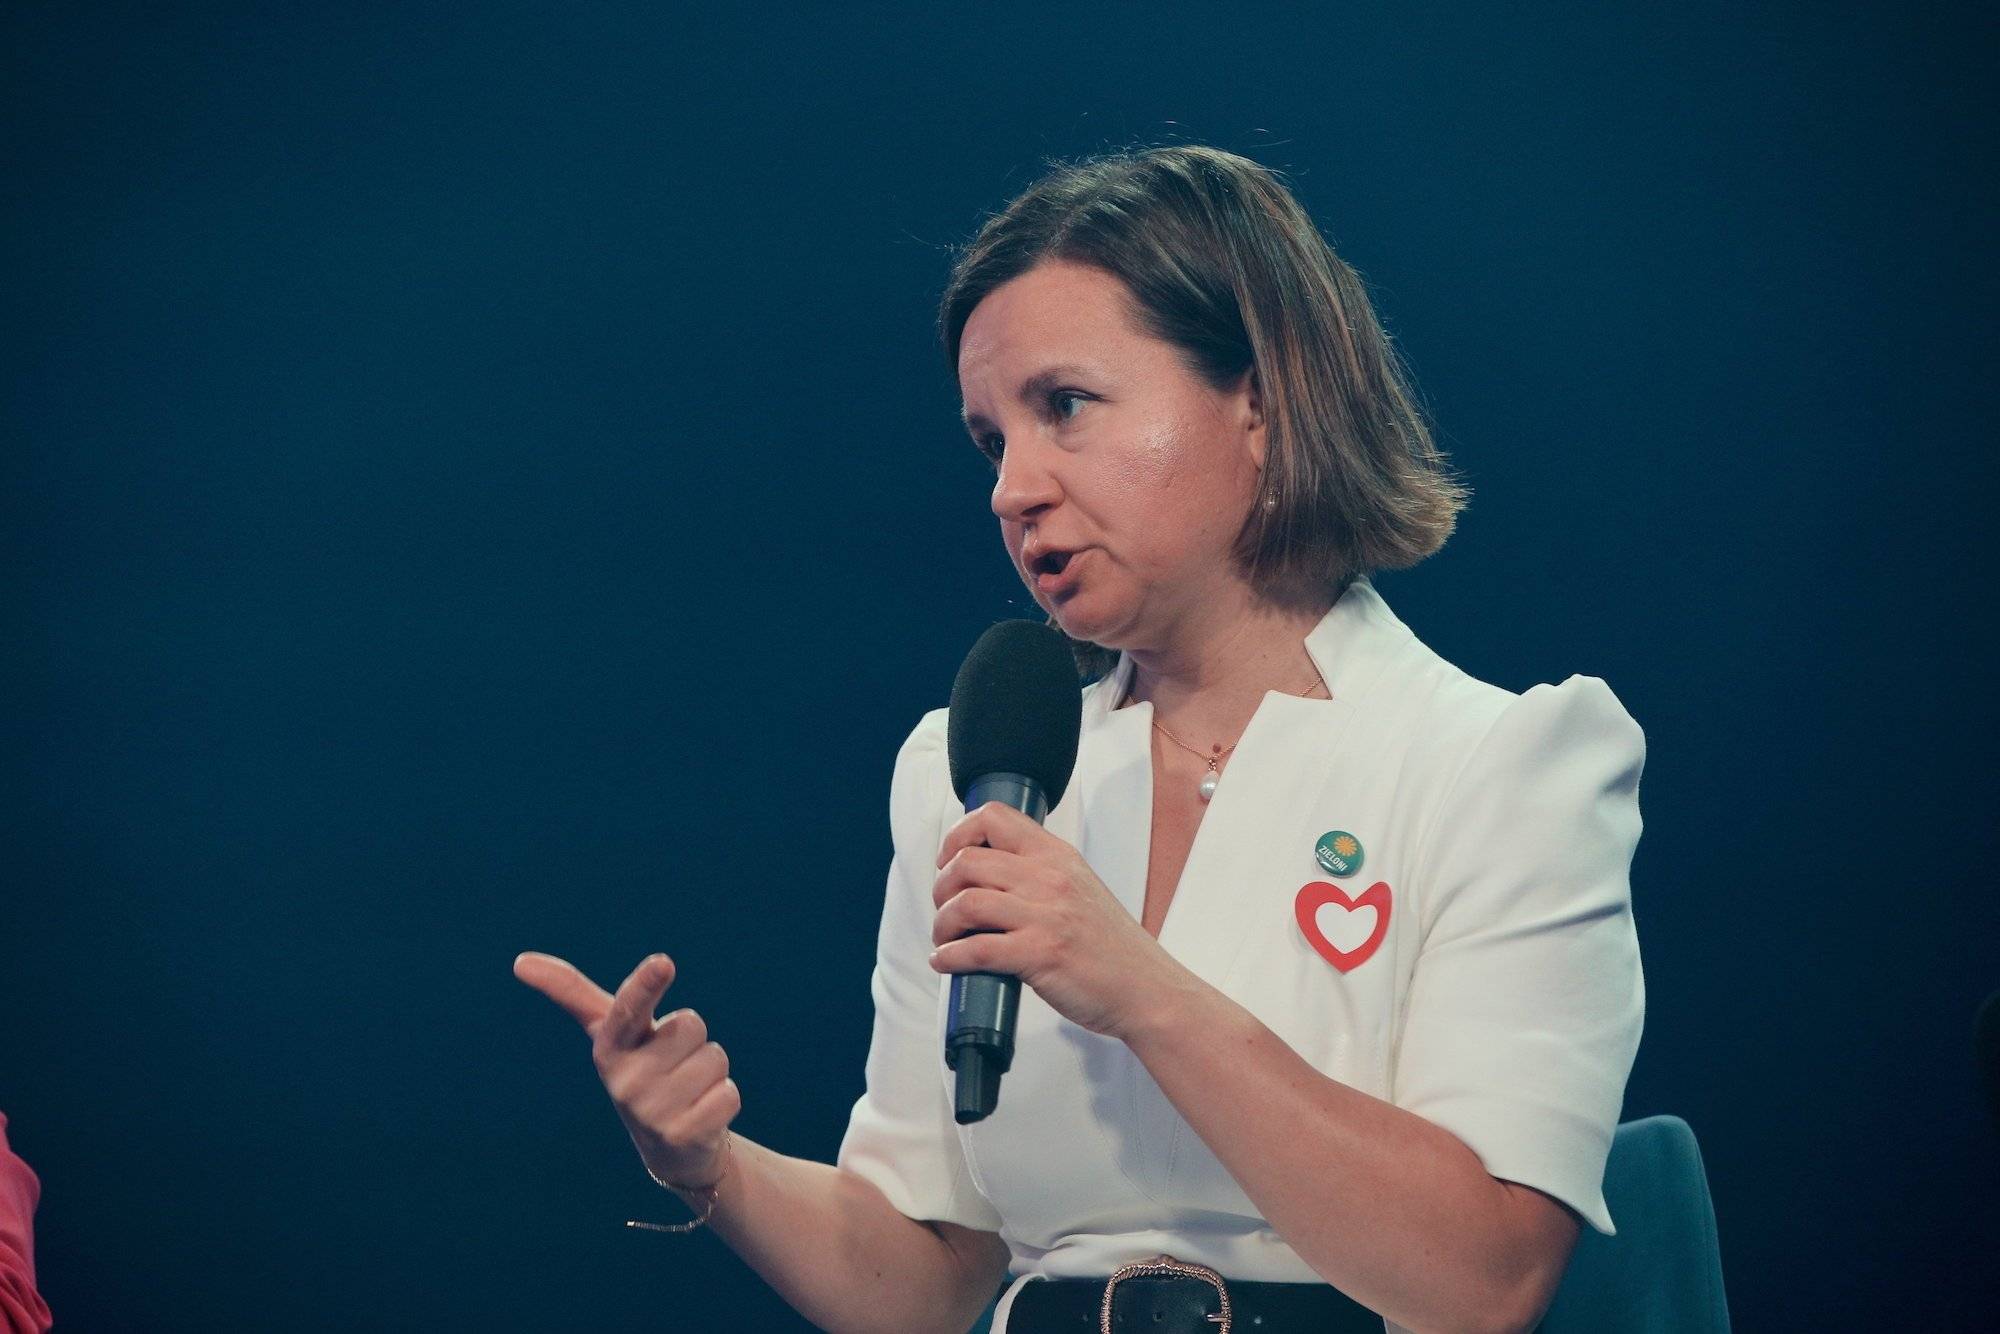 Urszula Zielińska w białej bluzce przemawia do mikrofonu. Siedzi w zielonym fotelu.